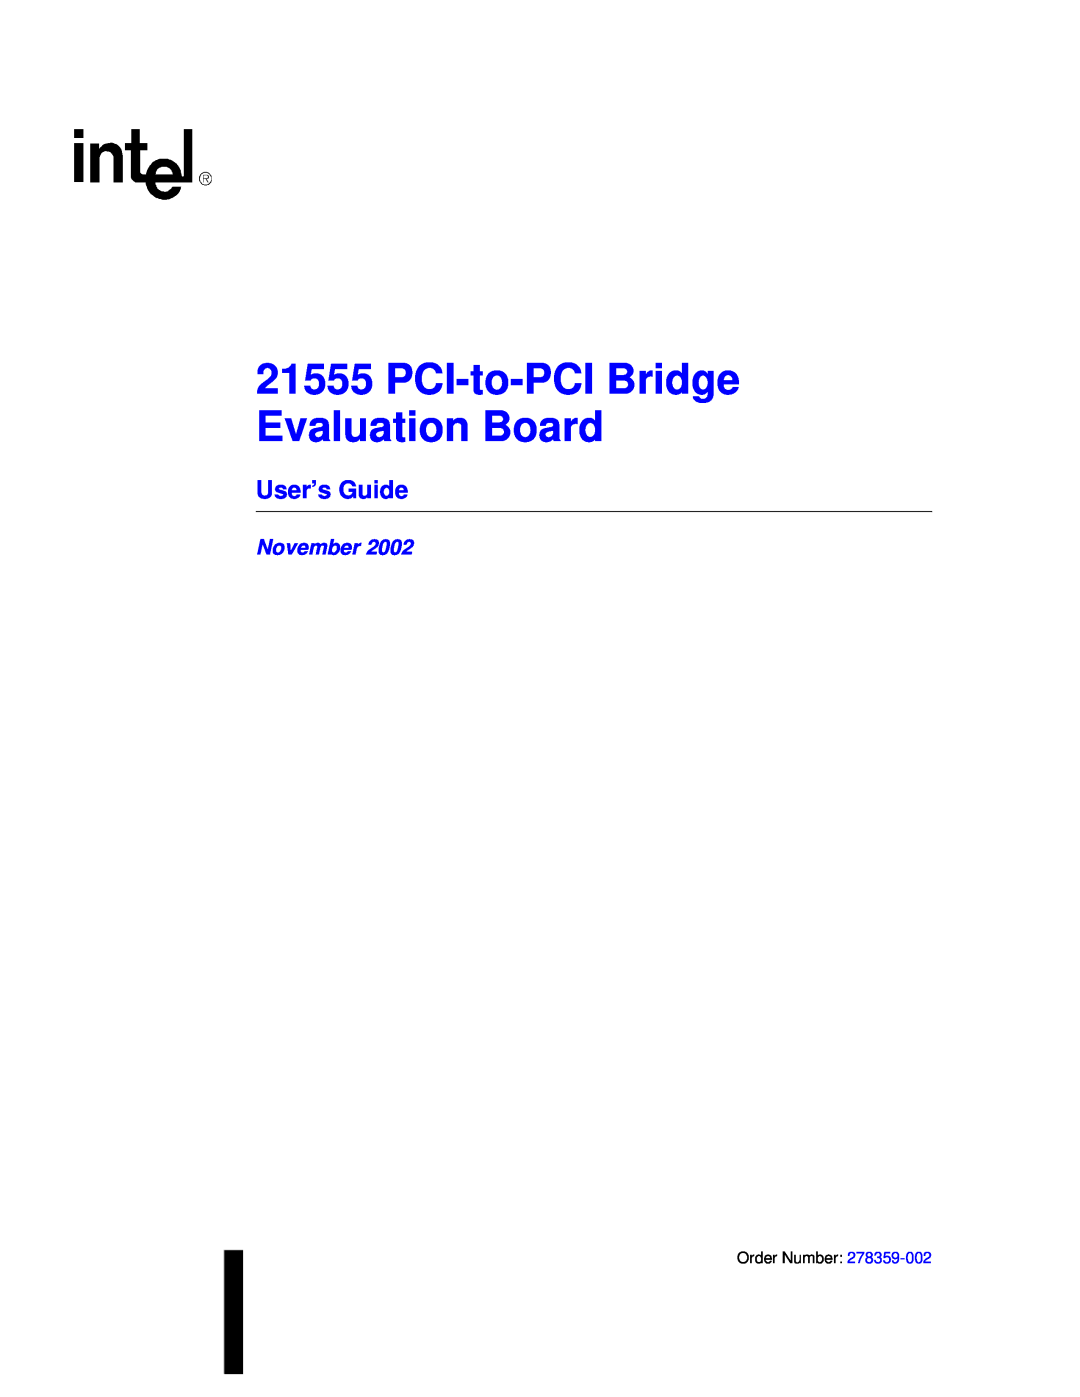 Intel 21555 manual User’s Guide, PCI-to-PCI Bridge Evaluation Board, November 